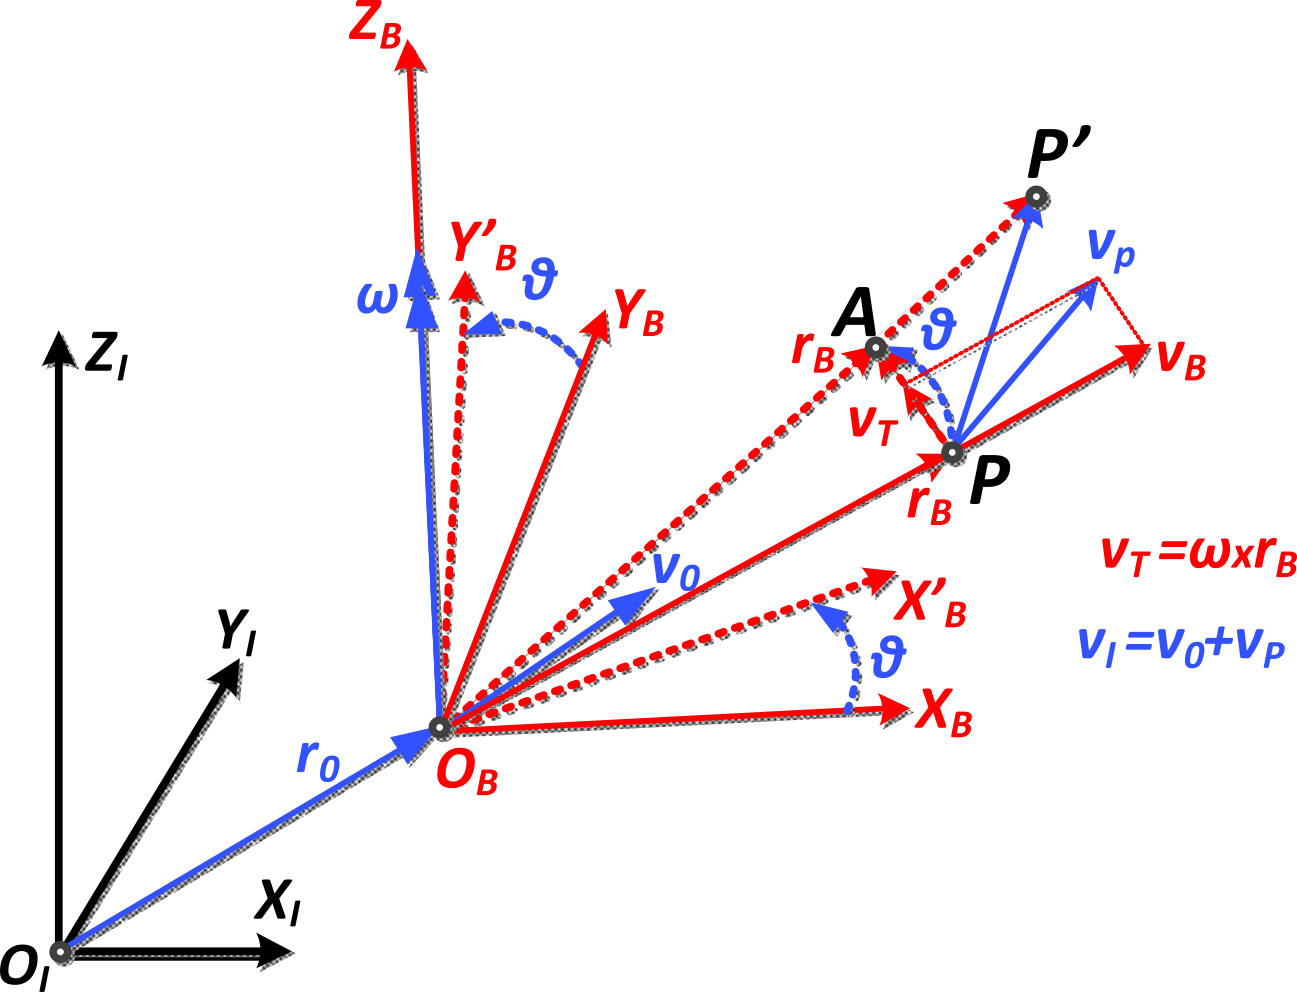 Η εικόνα δεν εμφανίζεται/Image is not displayed - Μεταβολές ενός σημείου P ενός σώματος Β το οποίο μεταφέρεται και στρέφεται ως προς ένα αδρανειακό σύστημα αναφοράς ΟΙΧΙΥΙΖΙ . Το ΟΒΧΒΥΒΖΒ είναι ένα σωματόδετο σύστημα αναφοράς. (Για λόγους απλότητας του σχήματος, η γωνιακή ταχύτητα βρίσκεται στον άξονα ΟΒΖΒ / kinematics, moving system